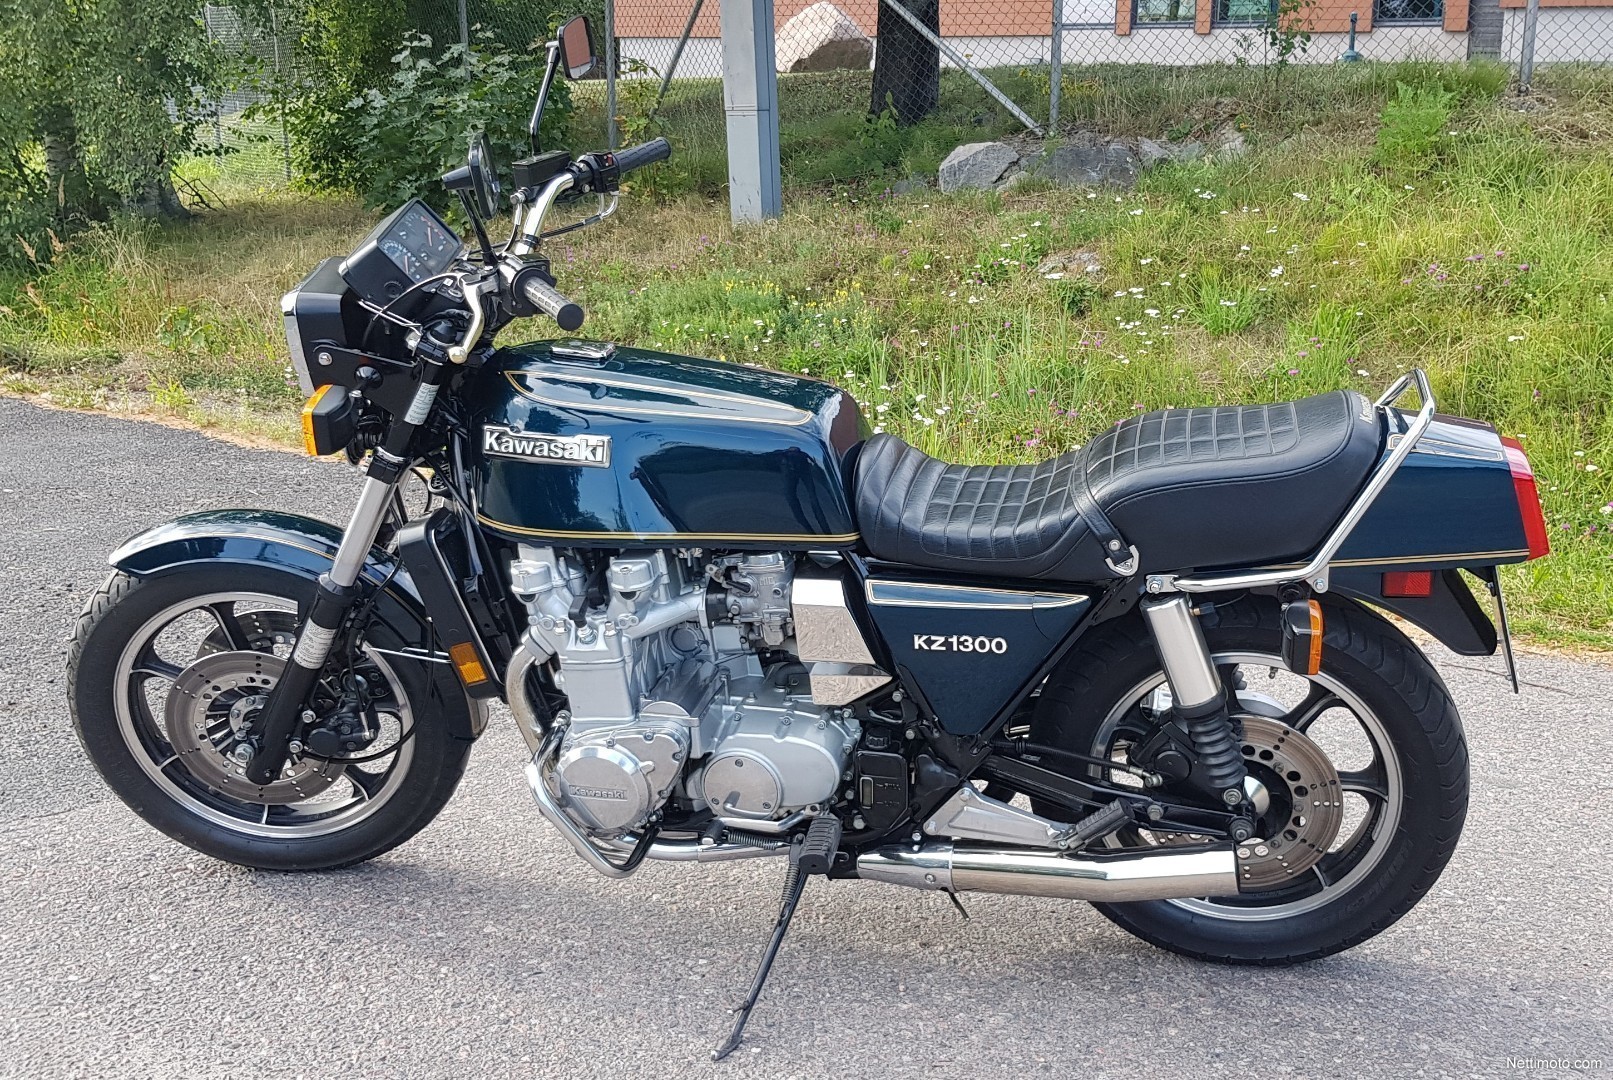 Kawasaki KZ 1300 1 300 cm³ 1979 - Helsinki - Moottoripyörä - Nettimoto